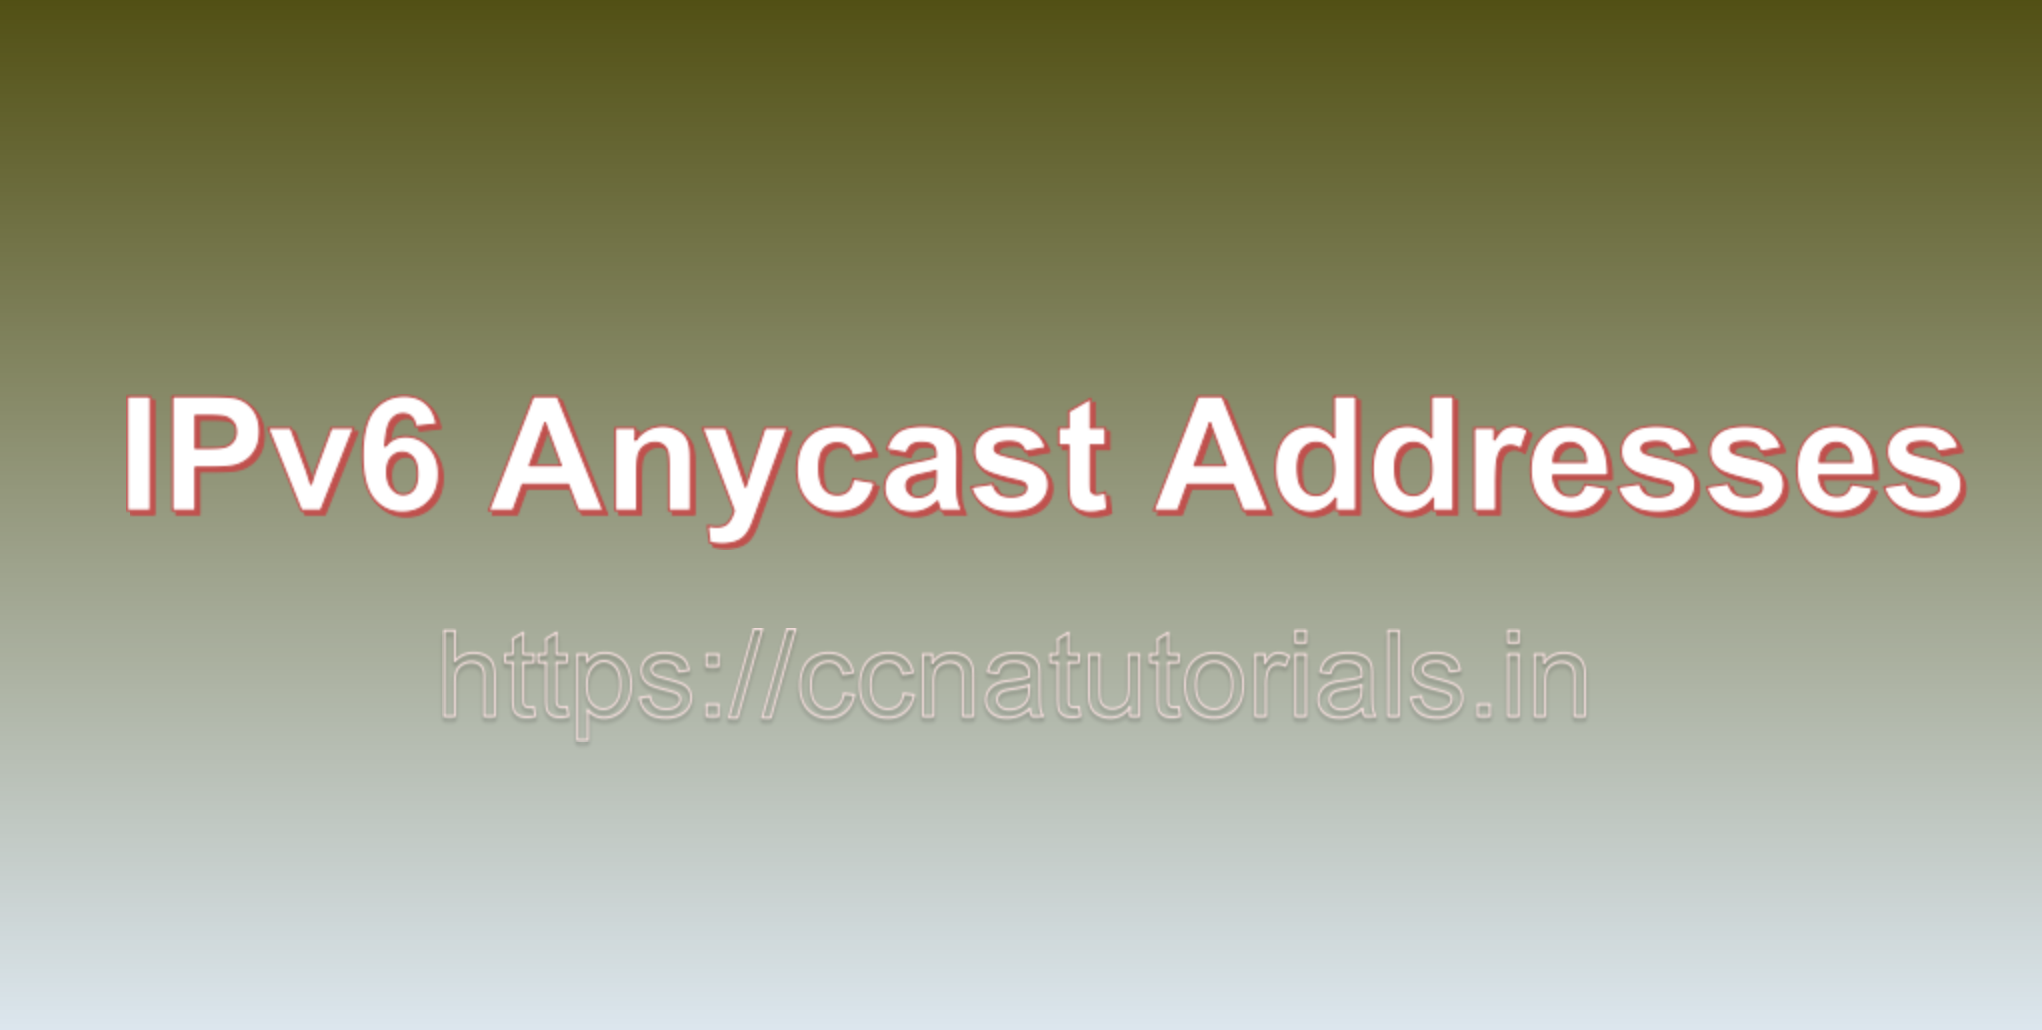 IPv6 Anycast Addresses, ccna, ccna tutorials